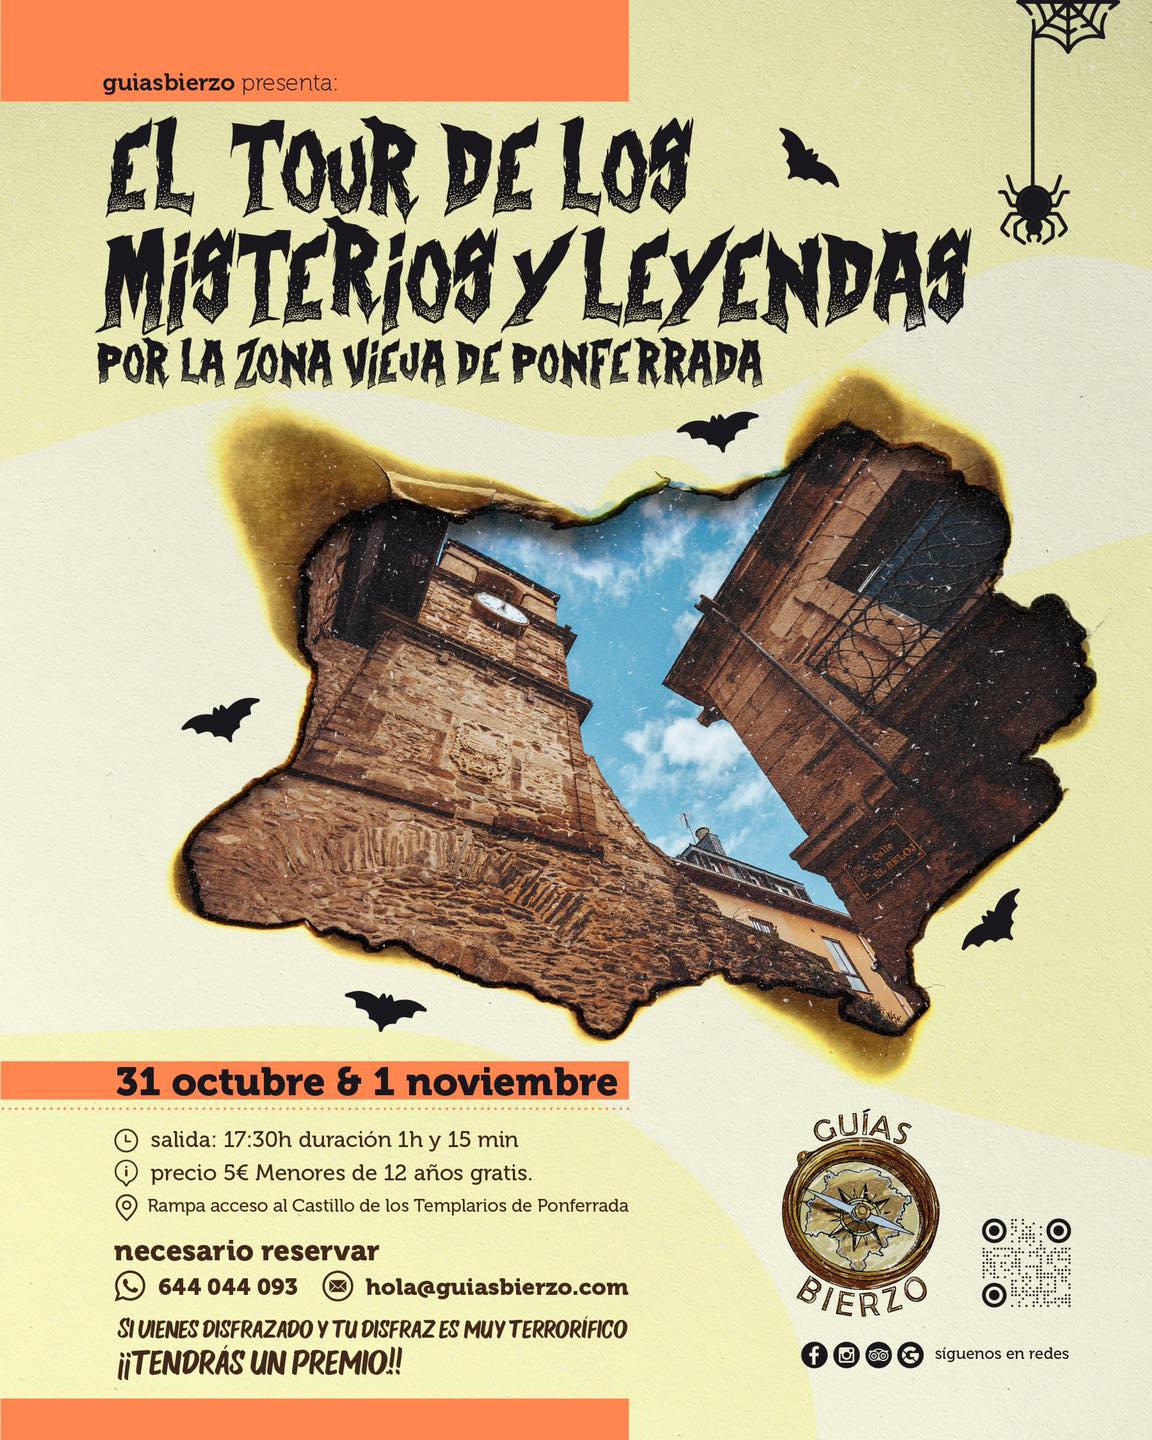 Guias Bierzo organiza en el Puente de los Santos: El Tour de los misterios y leyendas por la zona vieja de Ponferrada 2